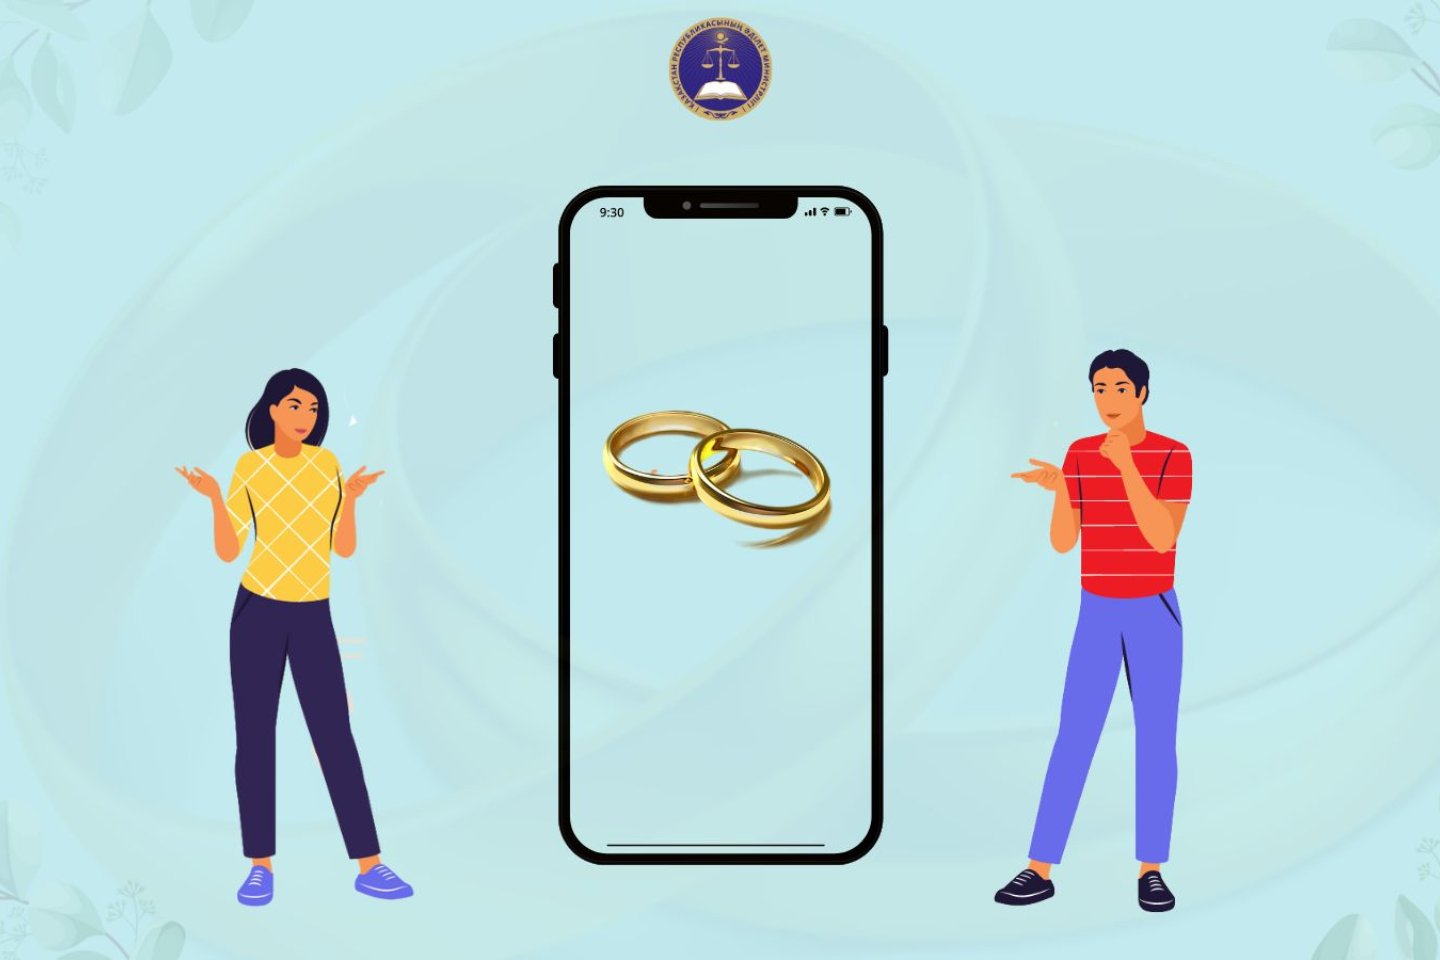 Новости Казахстана / Общество в Казахстане / Казахстанцы могут подать заявление на регистрацию брака через смартфон